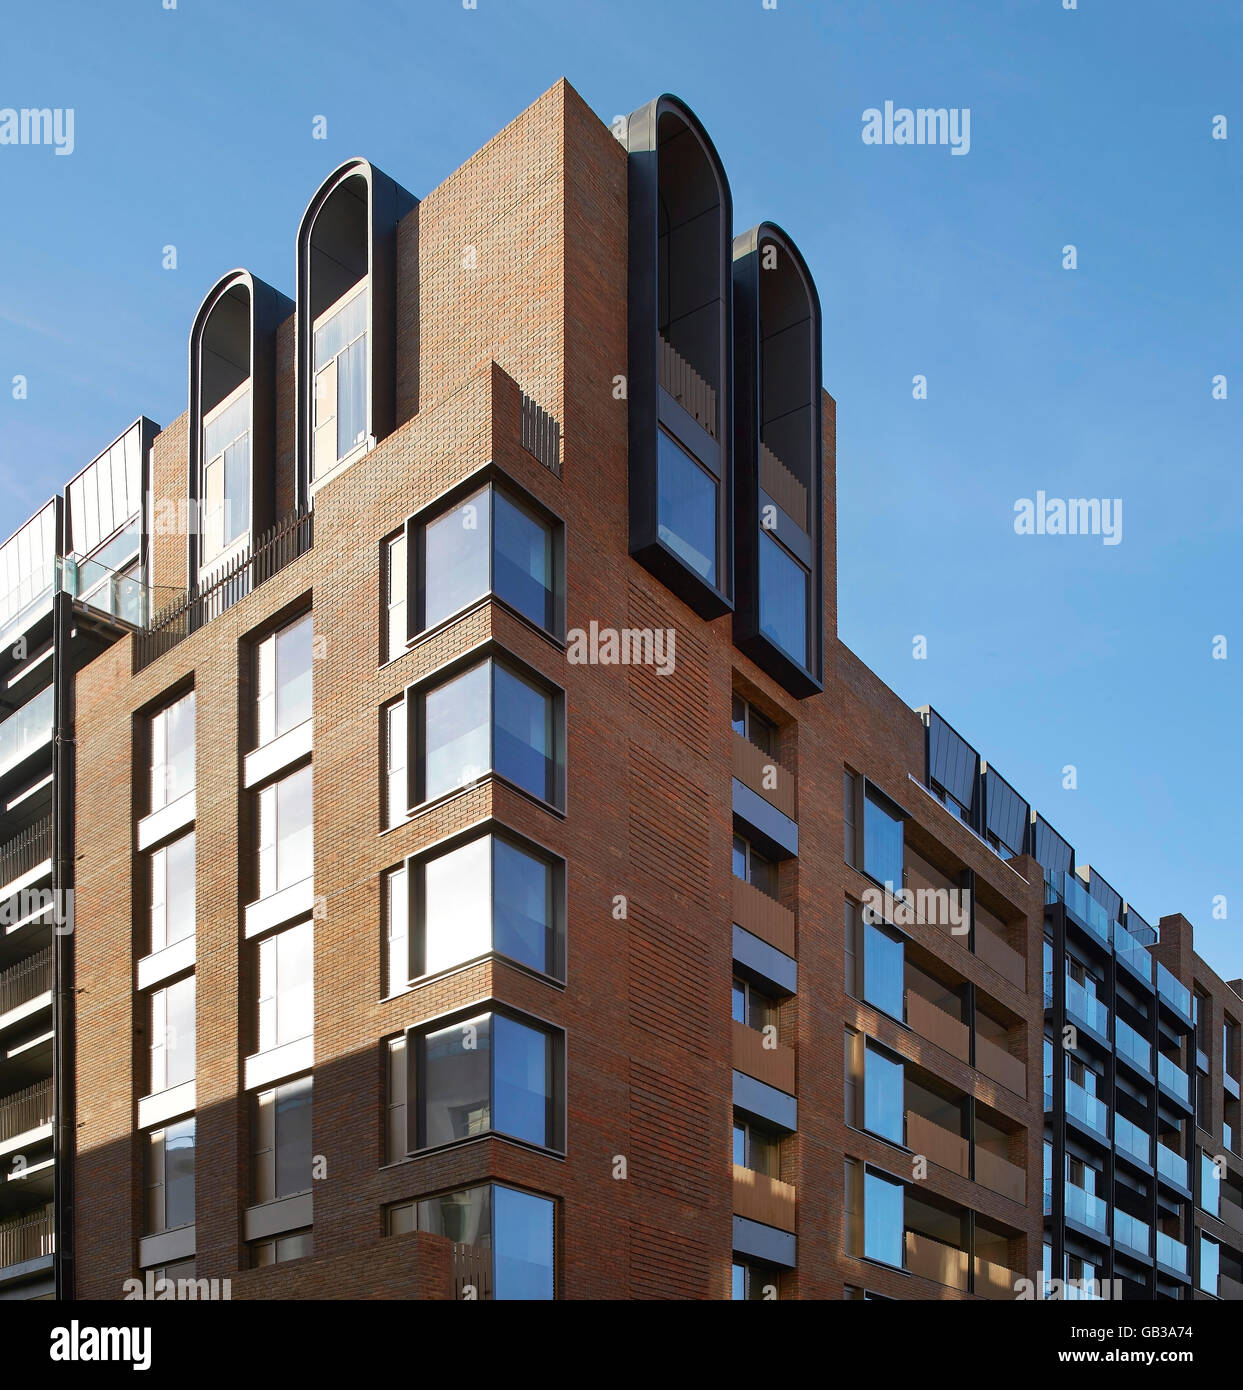 Elevación de la esquina revestidos de ladrillo rojo bloque residencial. Fitzroy Place, Londres, Reino Unido. Arquitecto: Lifschutz Davidson Sandilands, 2015. Foto de stock